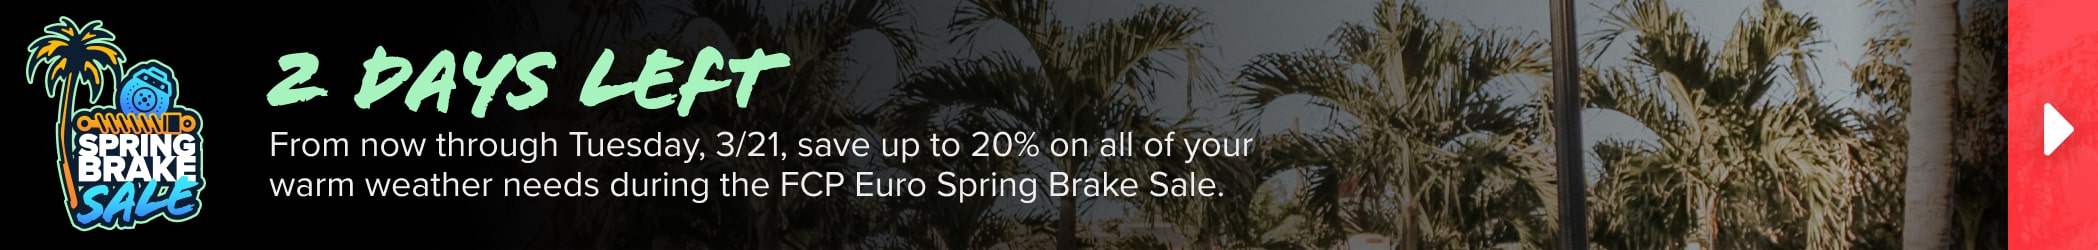 Website banner spring brake sale 2 days left 2098x250